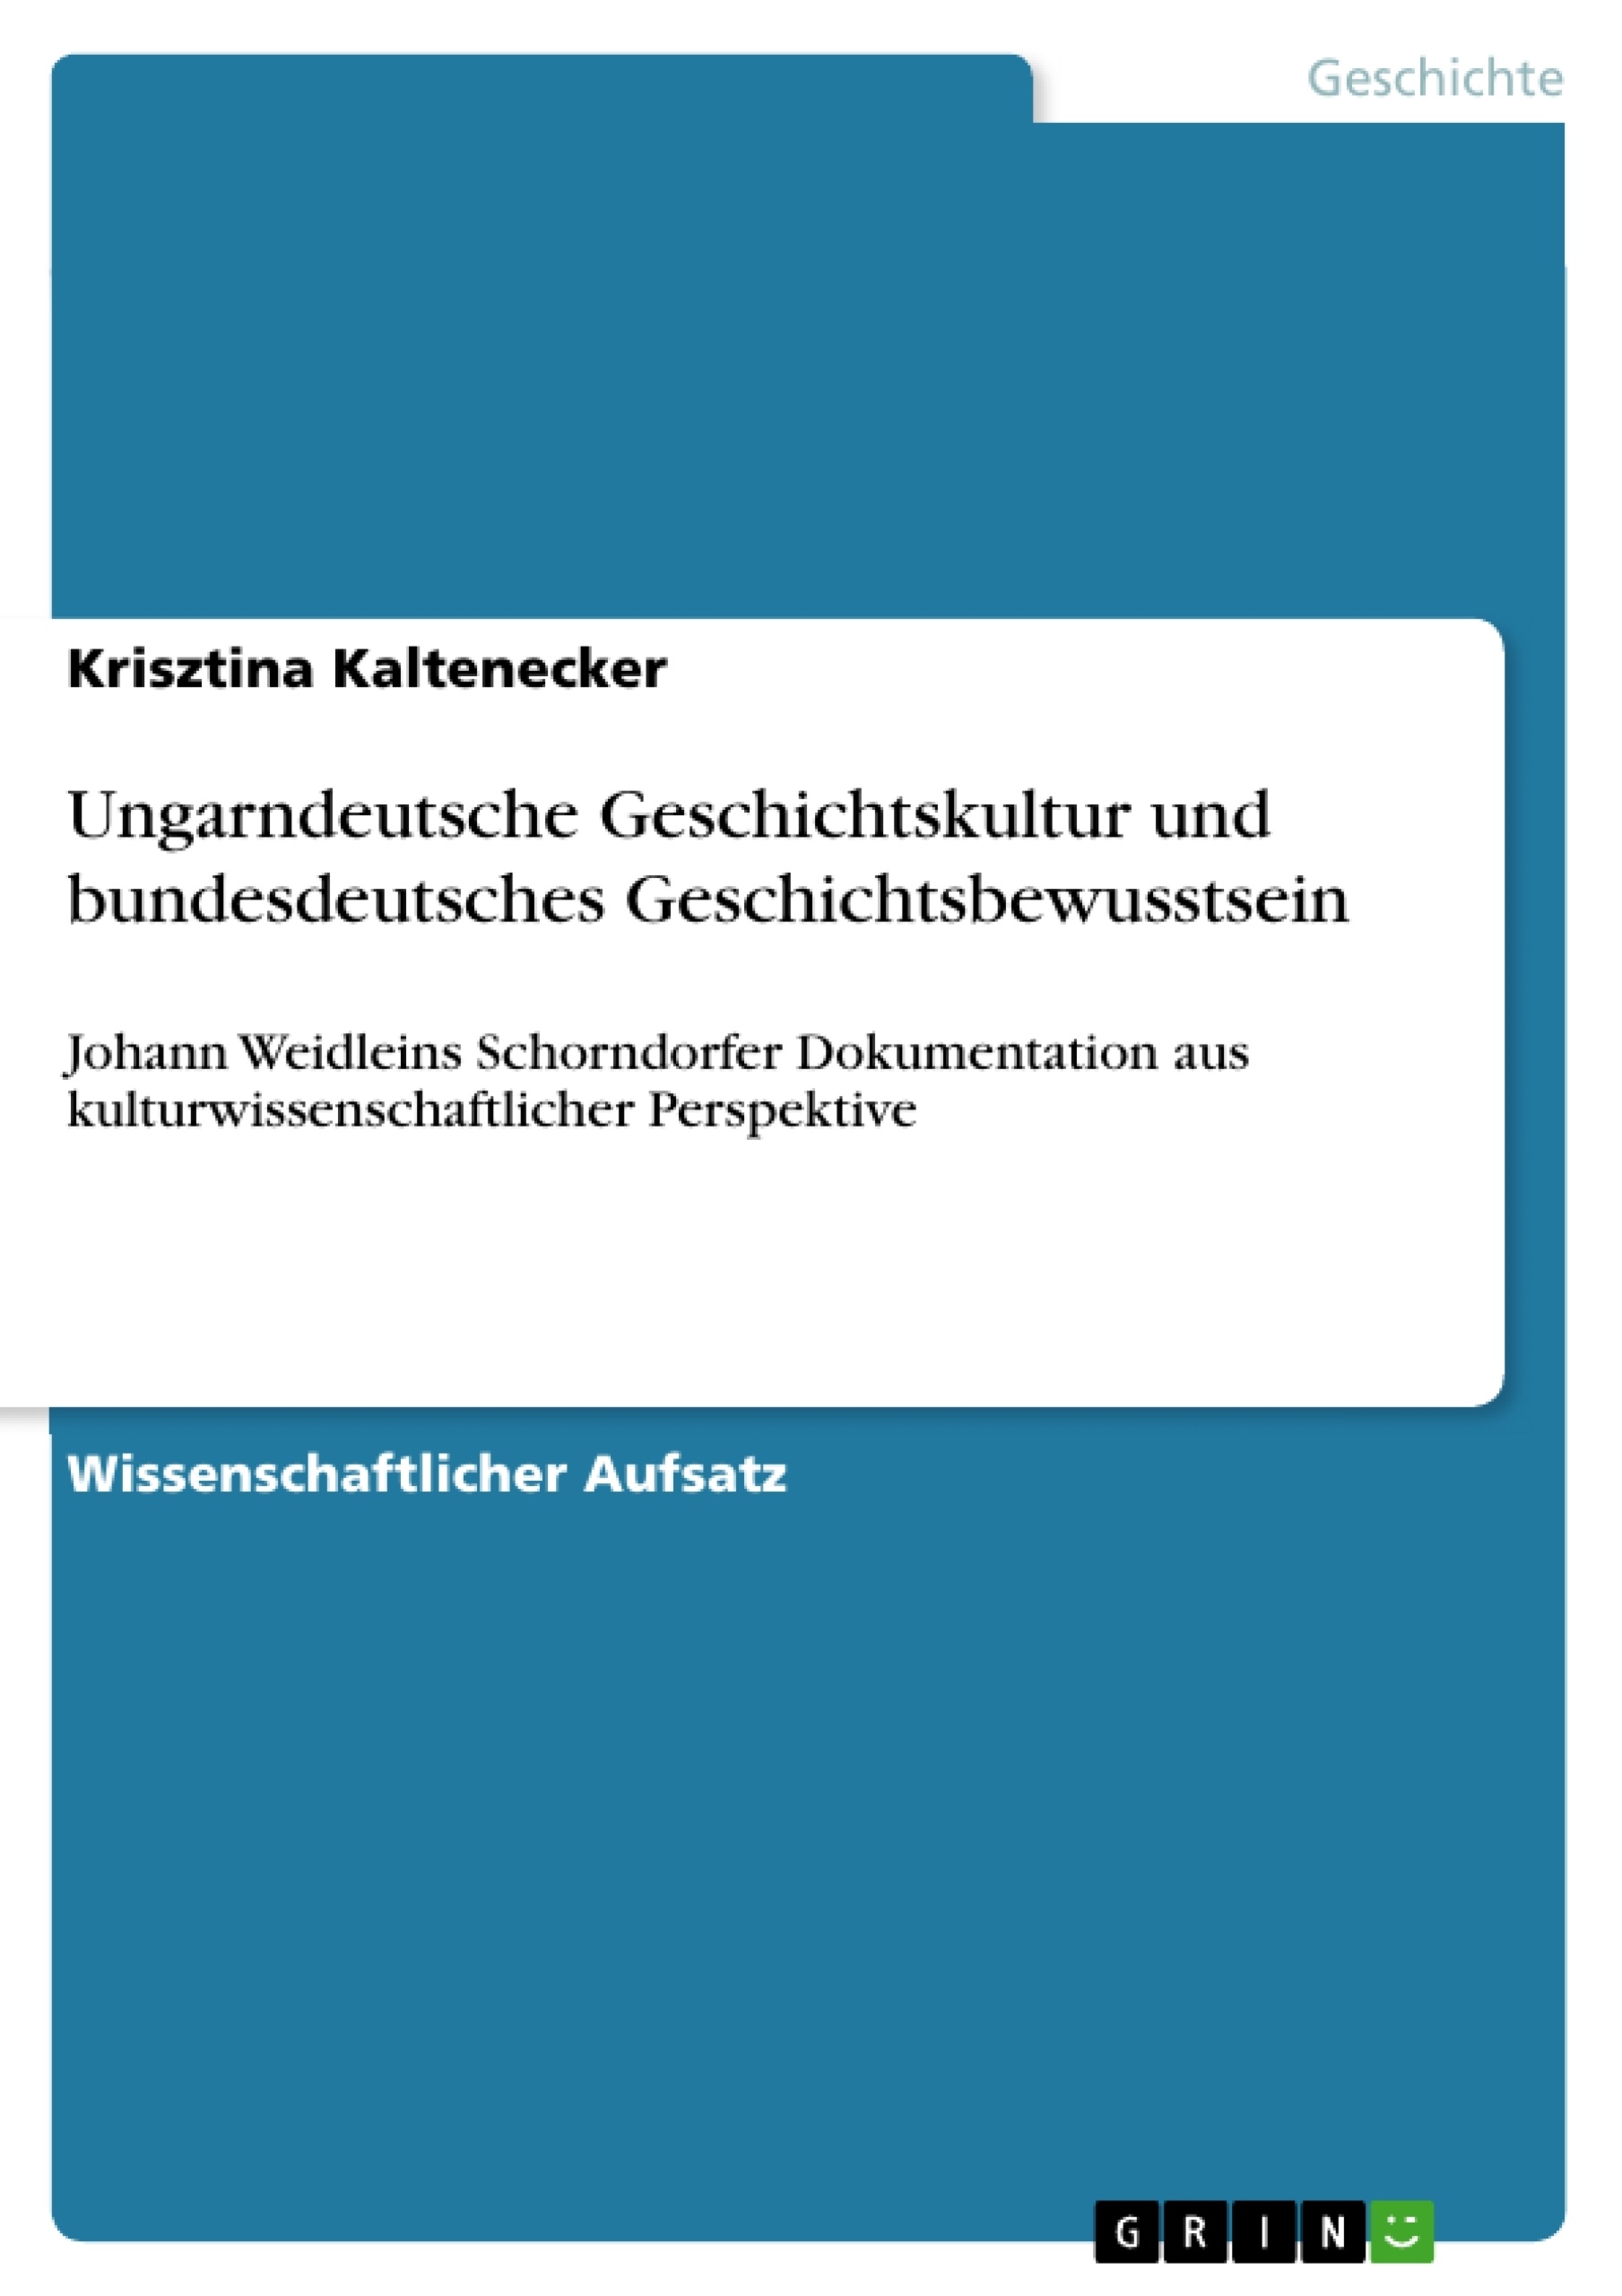 Titel: Ungarndeutsche Geschichtskultur und bundesdeutsches Geschichtsbewusstsein